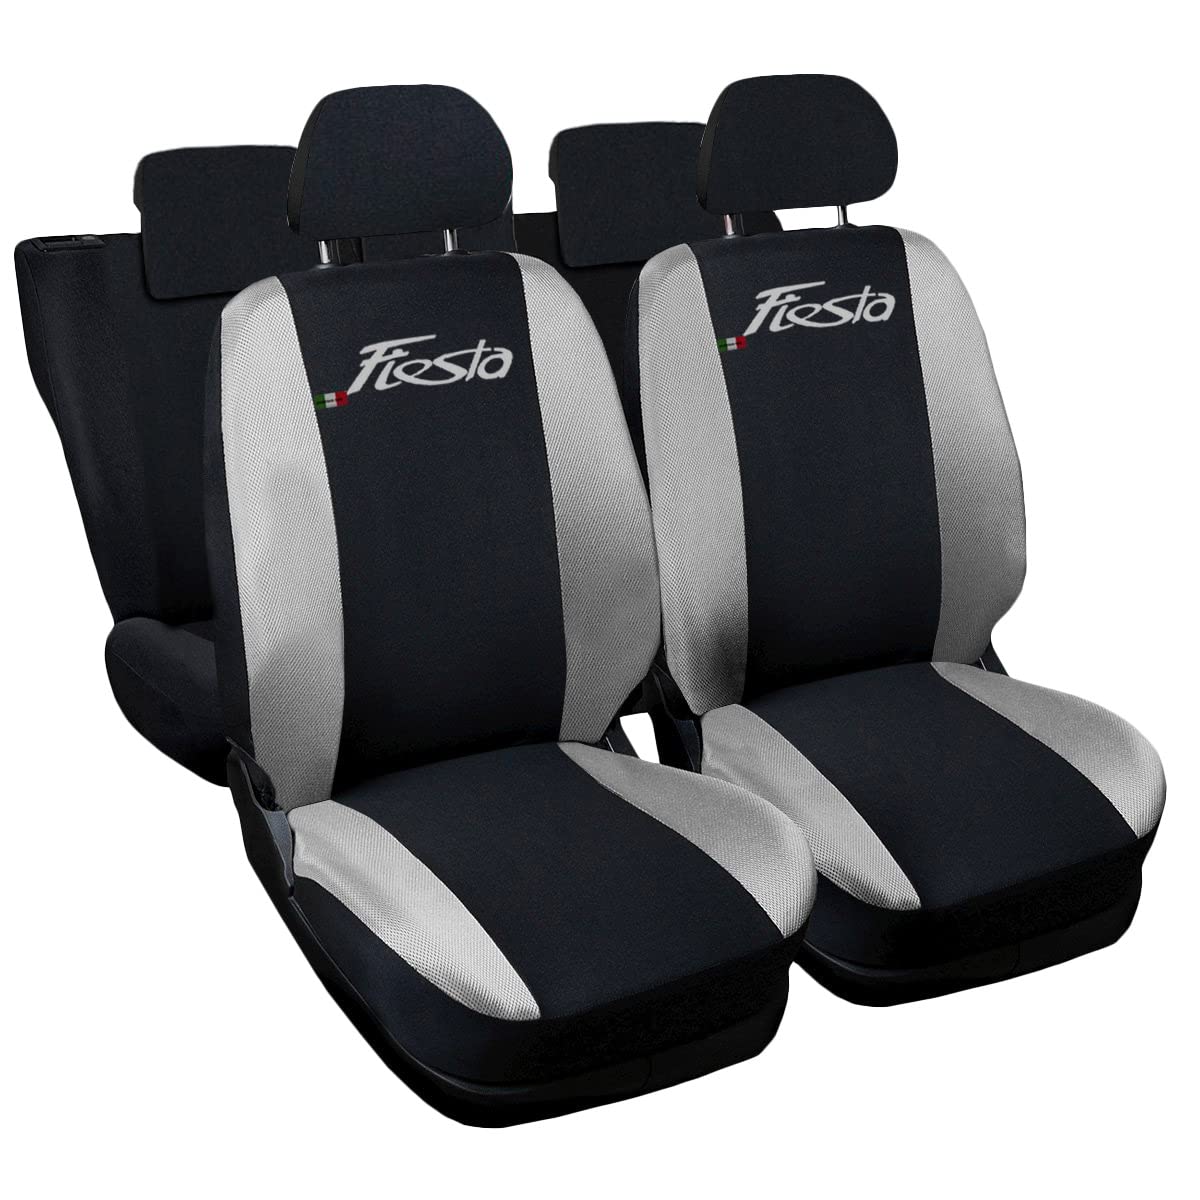 Lupex Shop Autositzbezüge kompatibel mit Fiesta, Made in Italy, Polyestergewebe, kompletter Satz Vorder- und Rücksitze (Schwarz - Hellgrau) von Lupex Shop